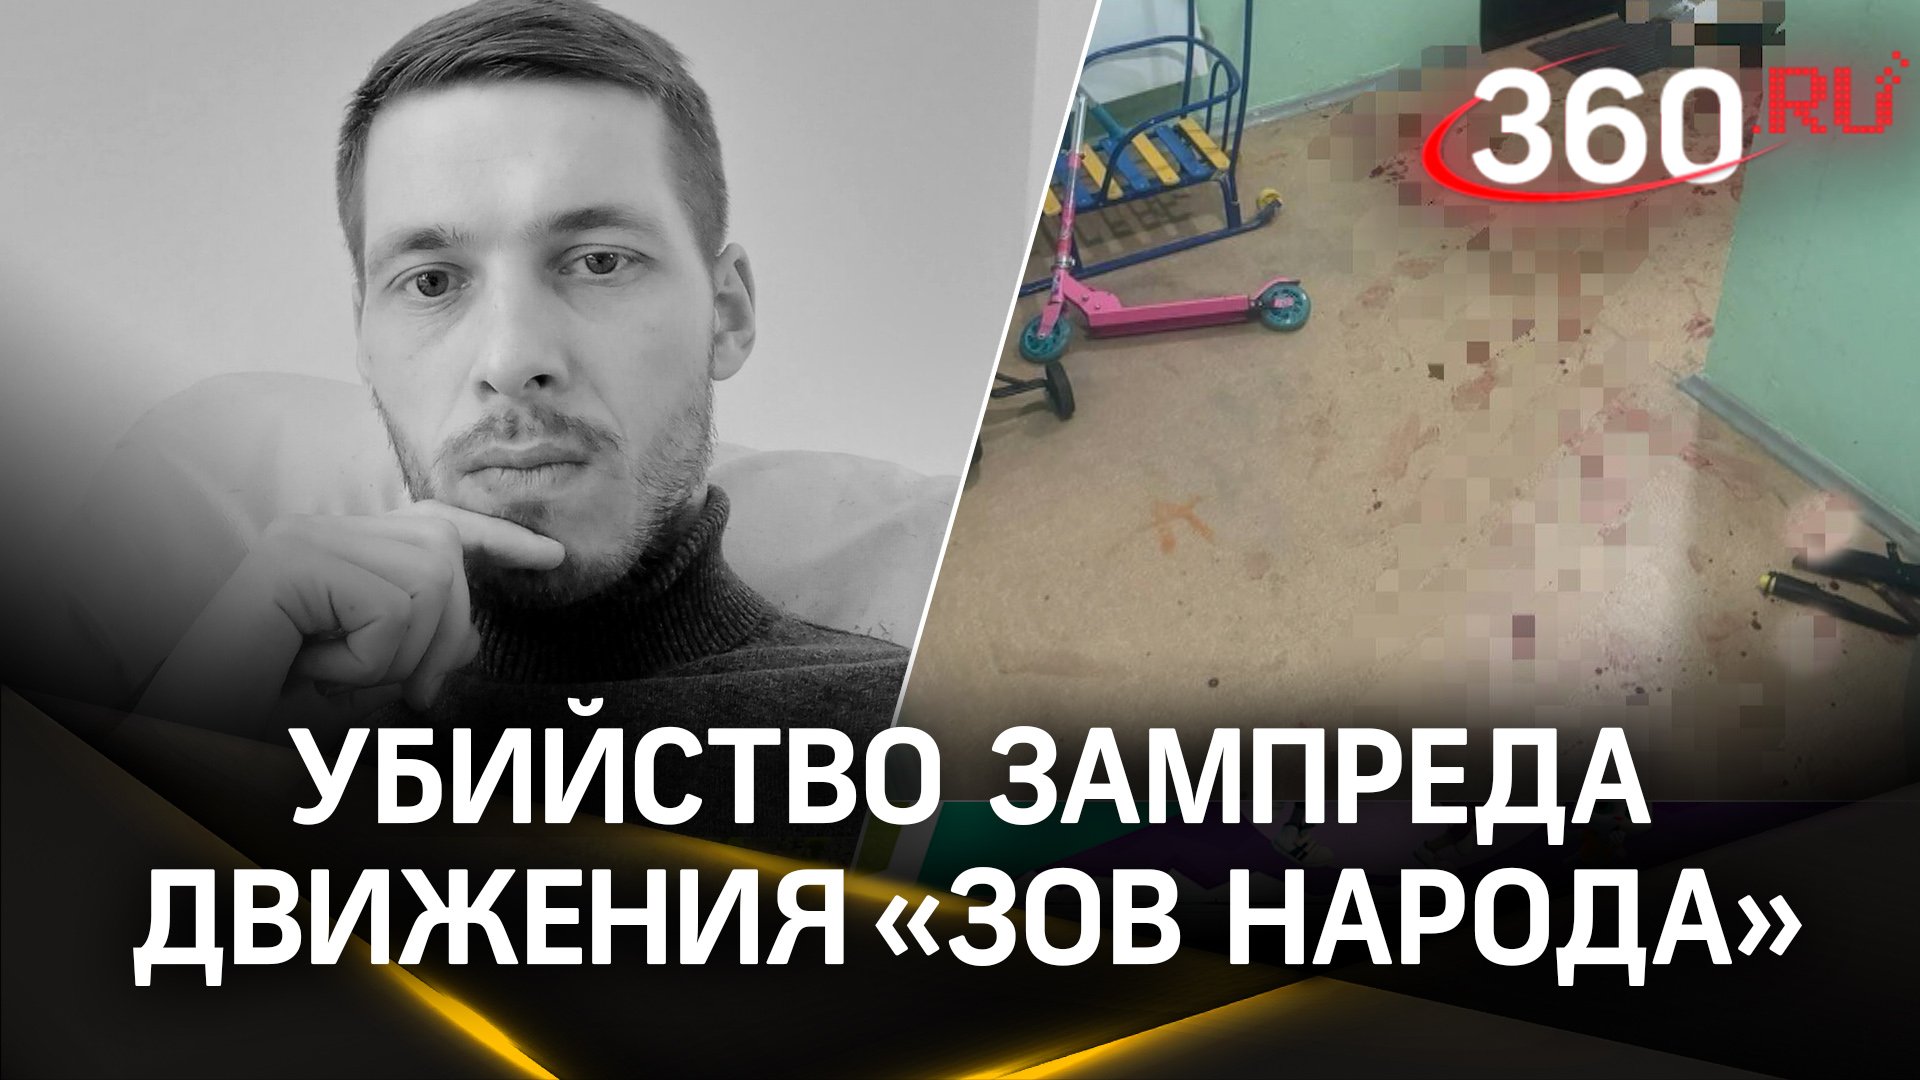 7 ножевых: зампреда «Зова Народа» Антона Еговцева убили около дома